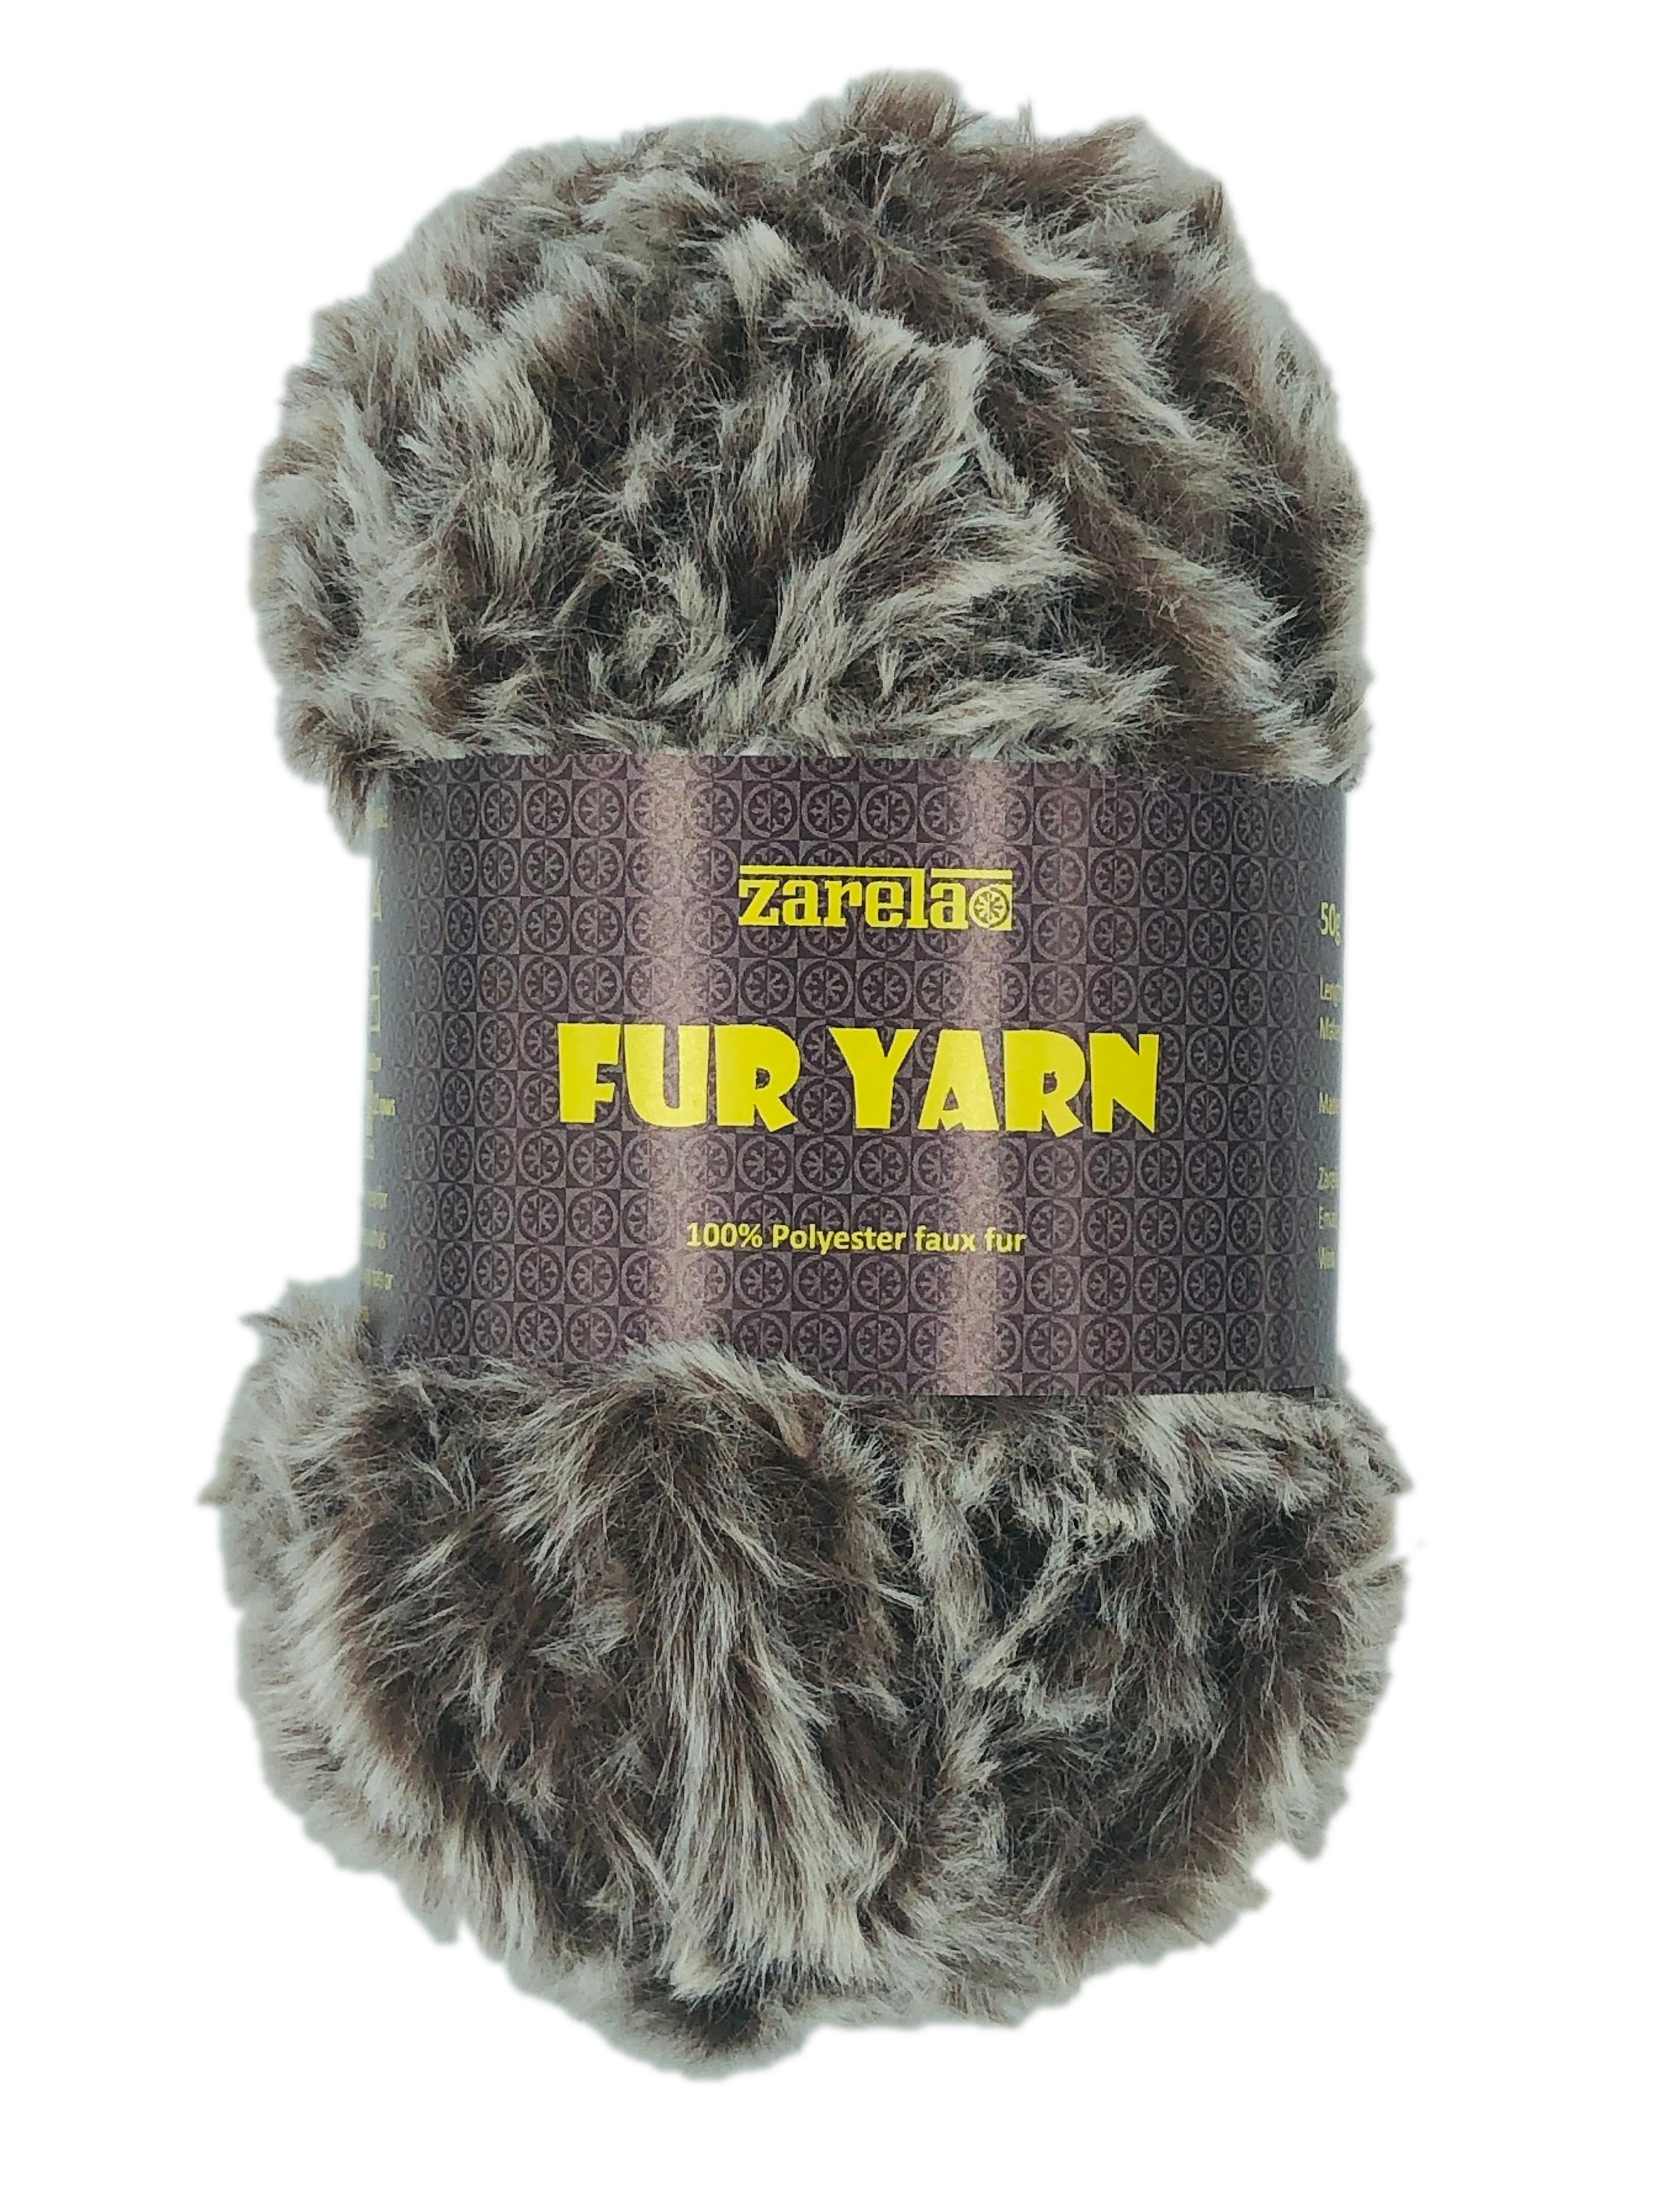 Fake Fur Yarn -  Canada